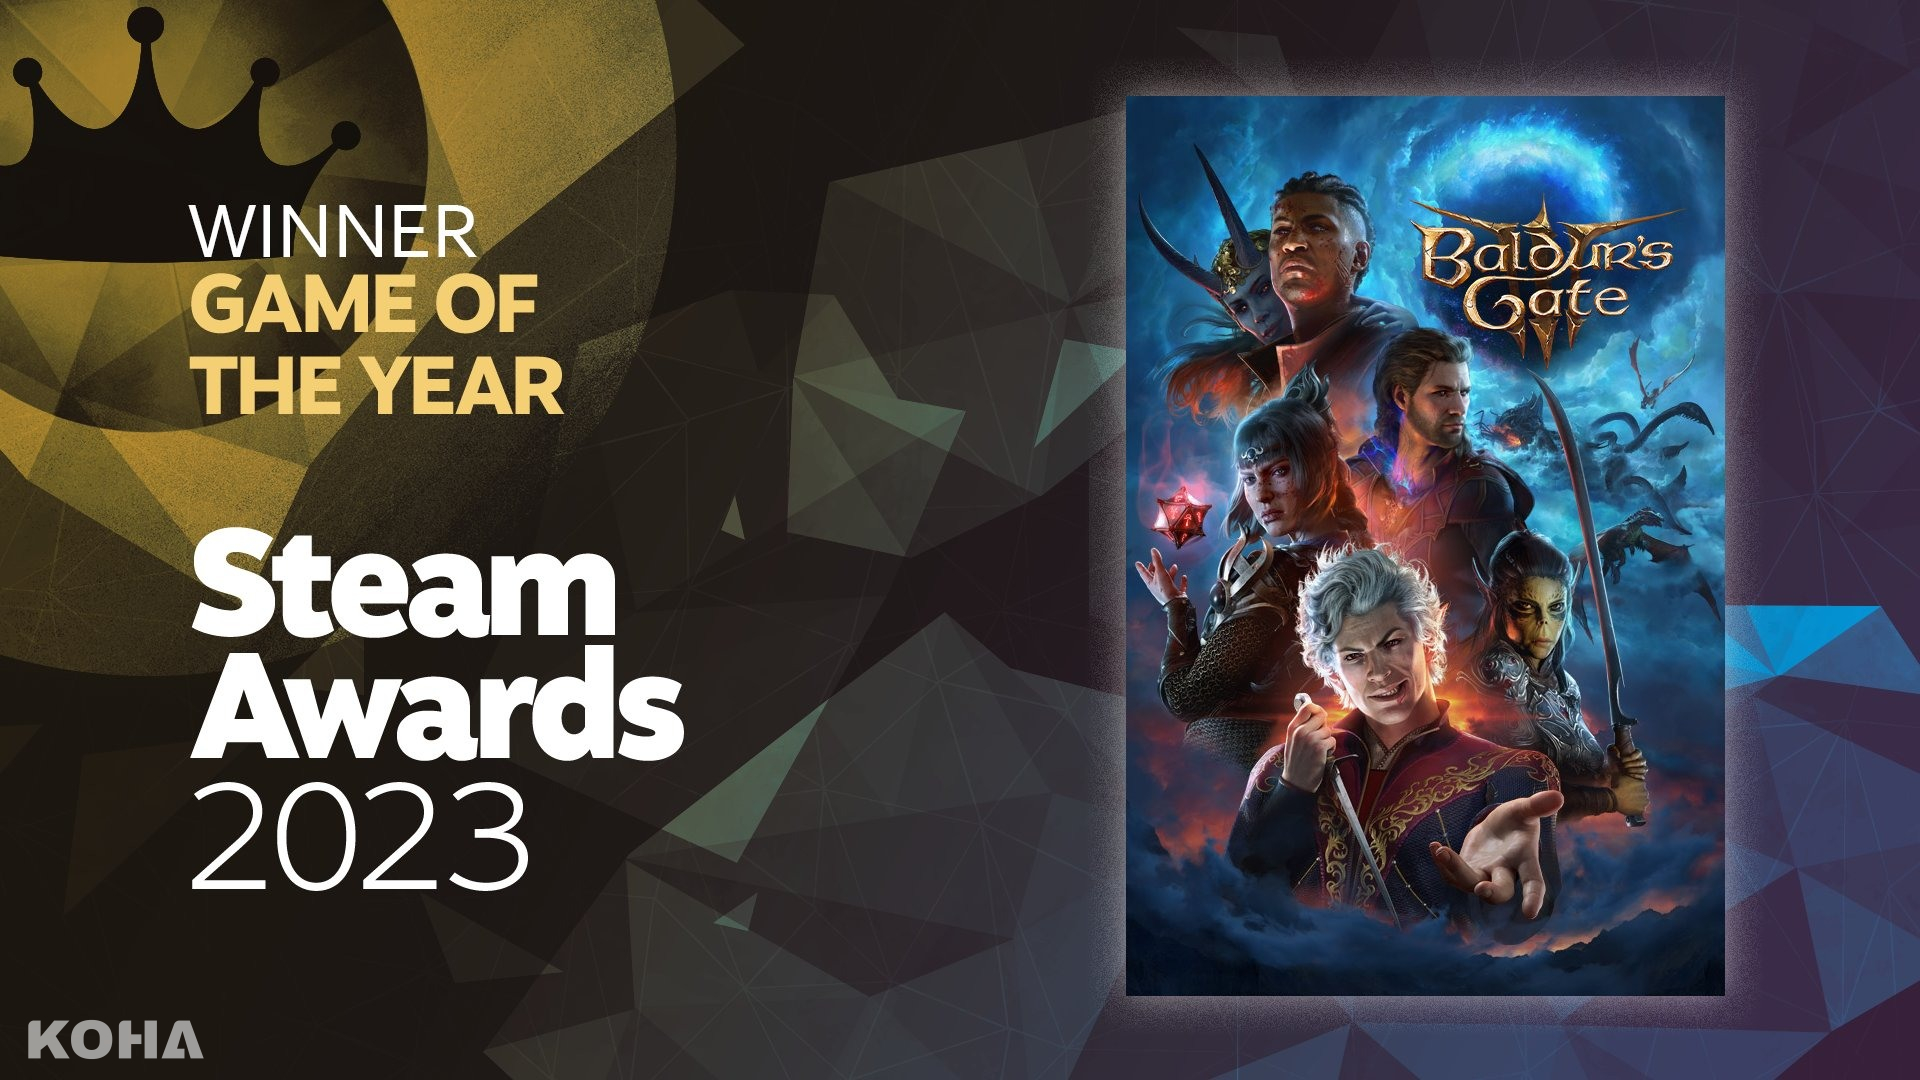 2023遊戲之冠《柏德之門3》成年度最佳遊戲 勇奪Steam「年度遊戲獎」、「傑出劇情遊戲獎」